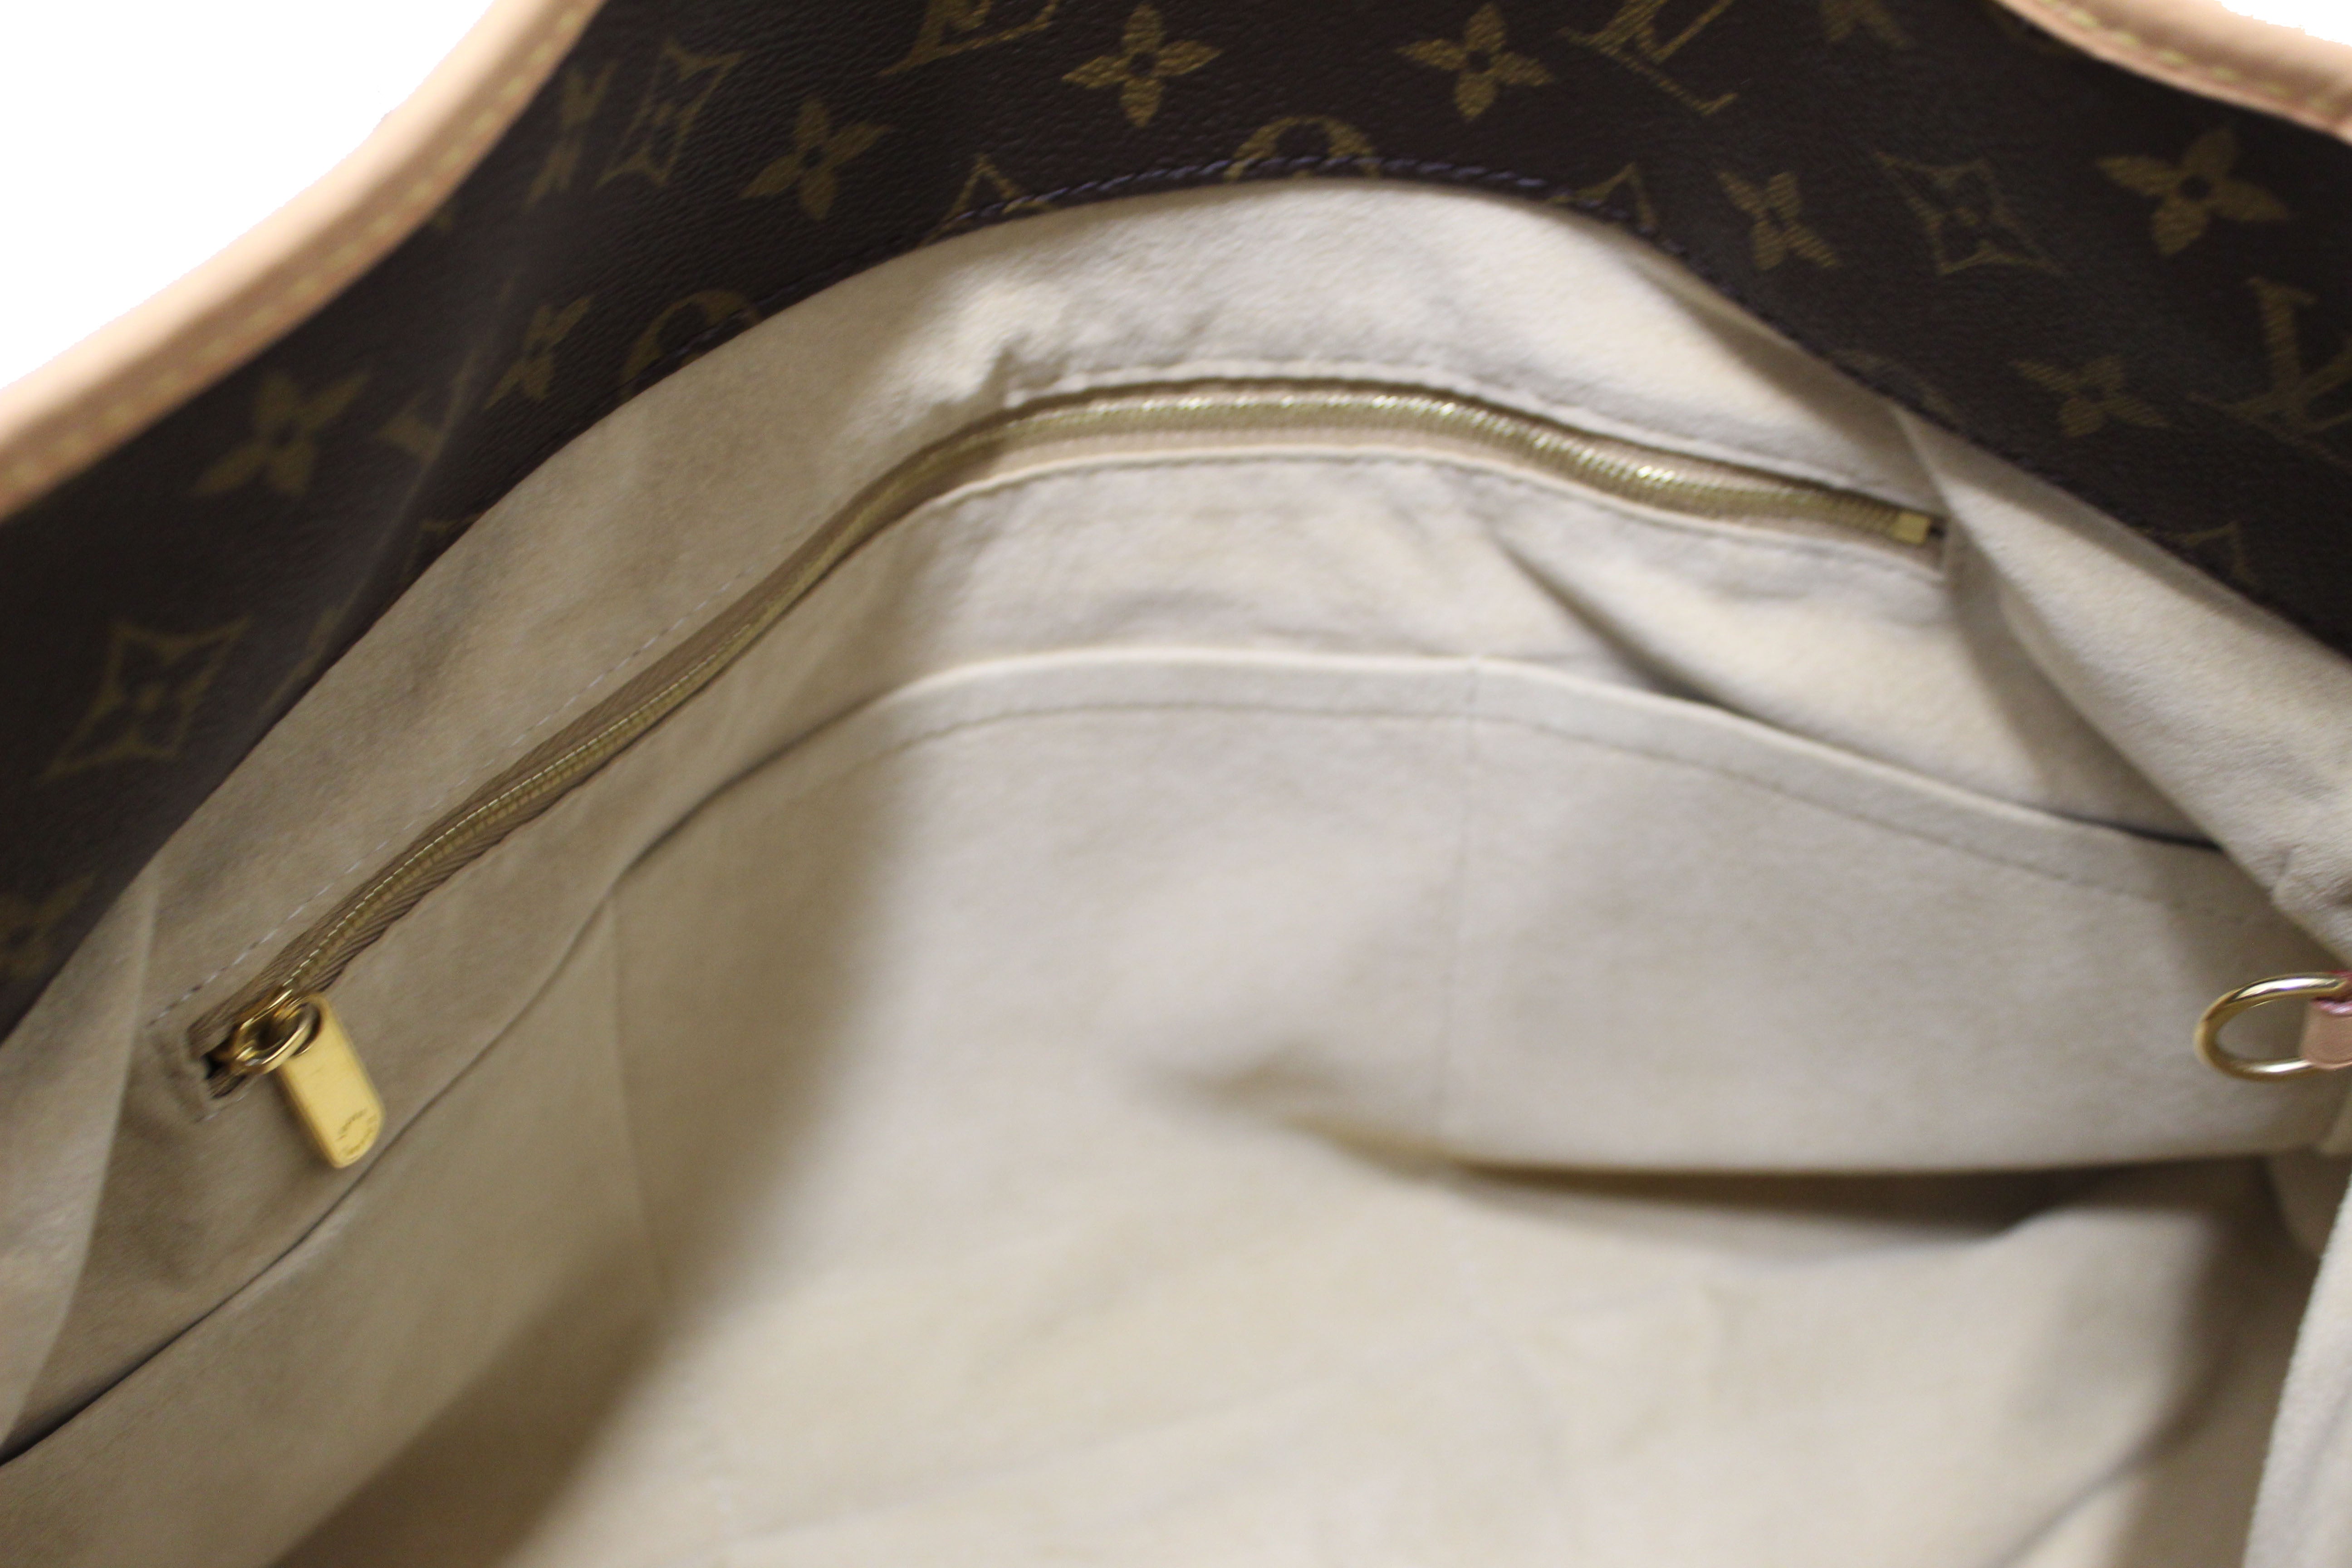 Authentic Louis Vuitton Classic Monogram Canvas Artsy mm Shoulder Bag